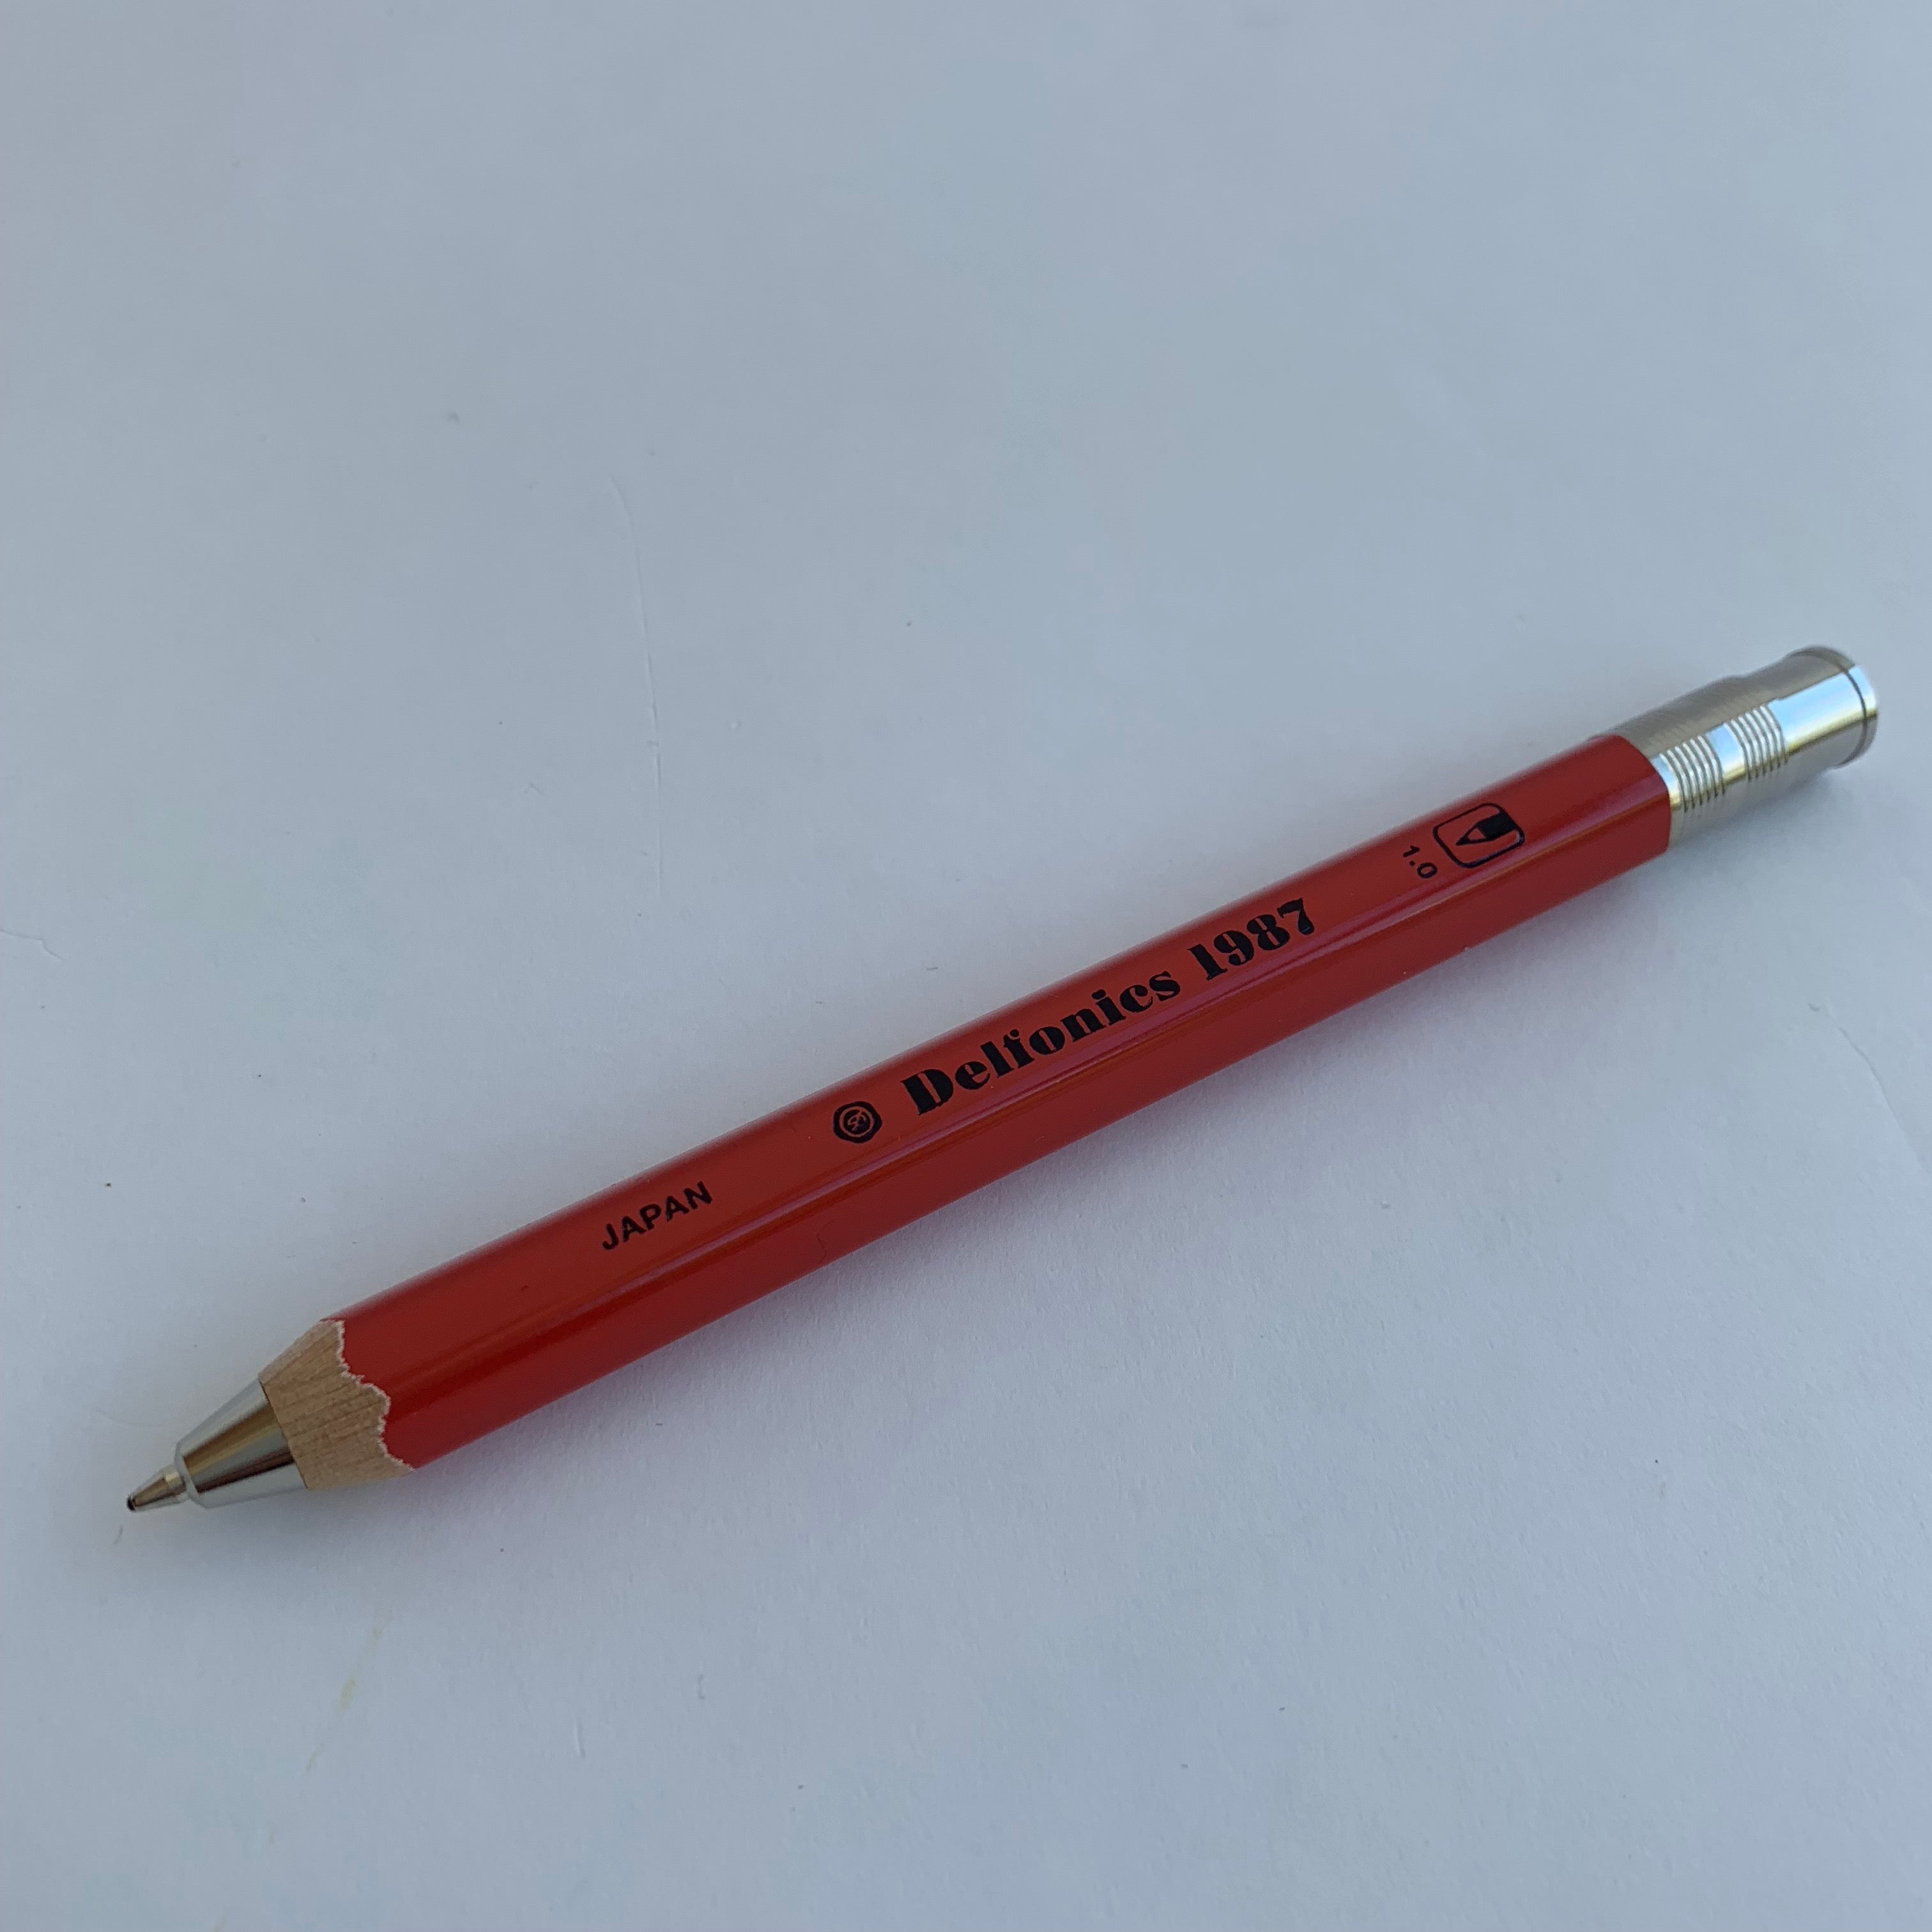 Delfonics X Penel Sharp Pencil- Red